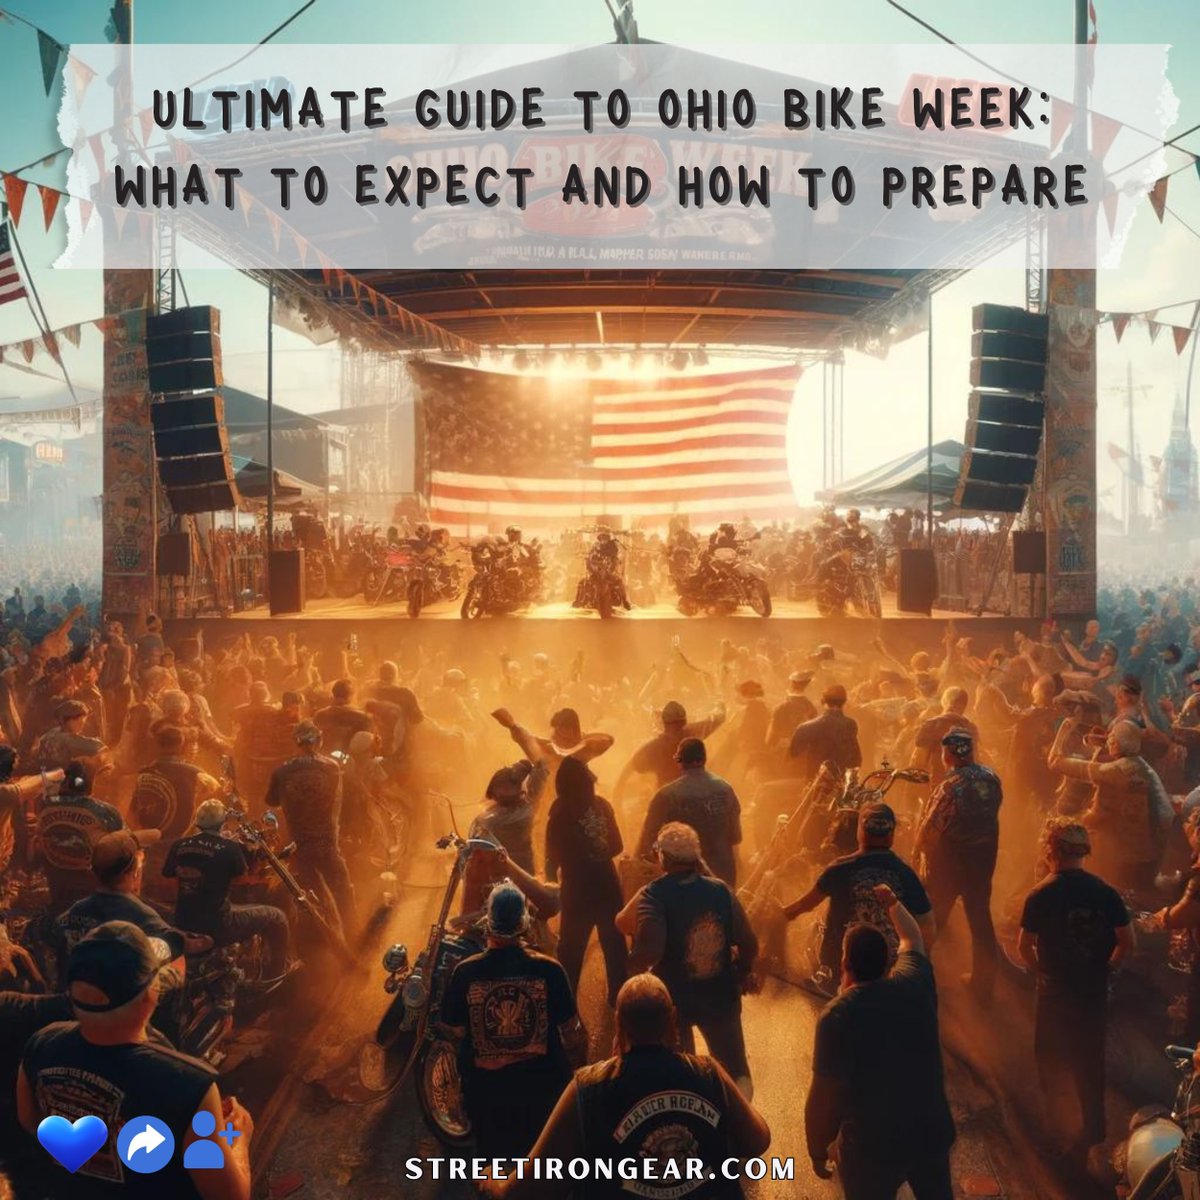 Ultimate Guide To Ohio Bike Week: What To Expect And How To Prepare 

Read on
buff.ly/4aXX1QW 

#OhioBikeWeek #BikeLife #BikerCommunity #RideOhio #MotorcycleAdventure #TravelOhio #StreetIronGear